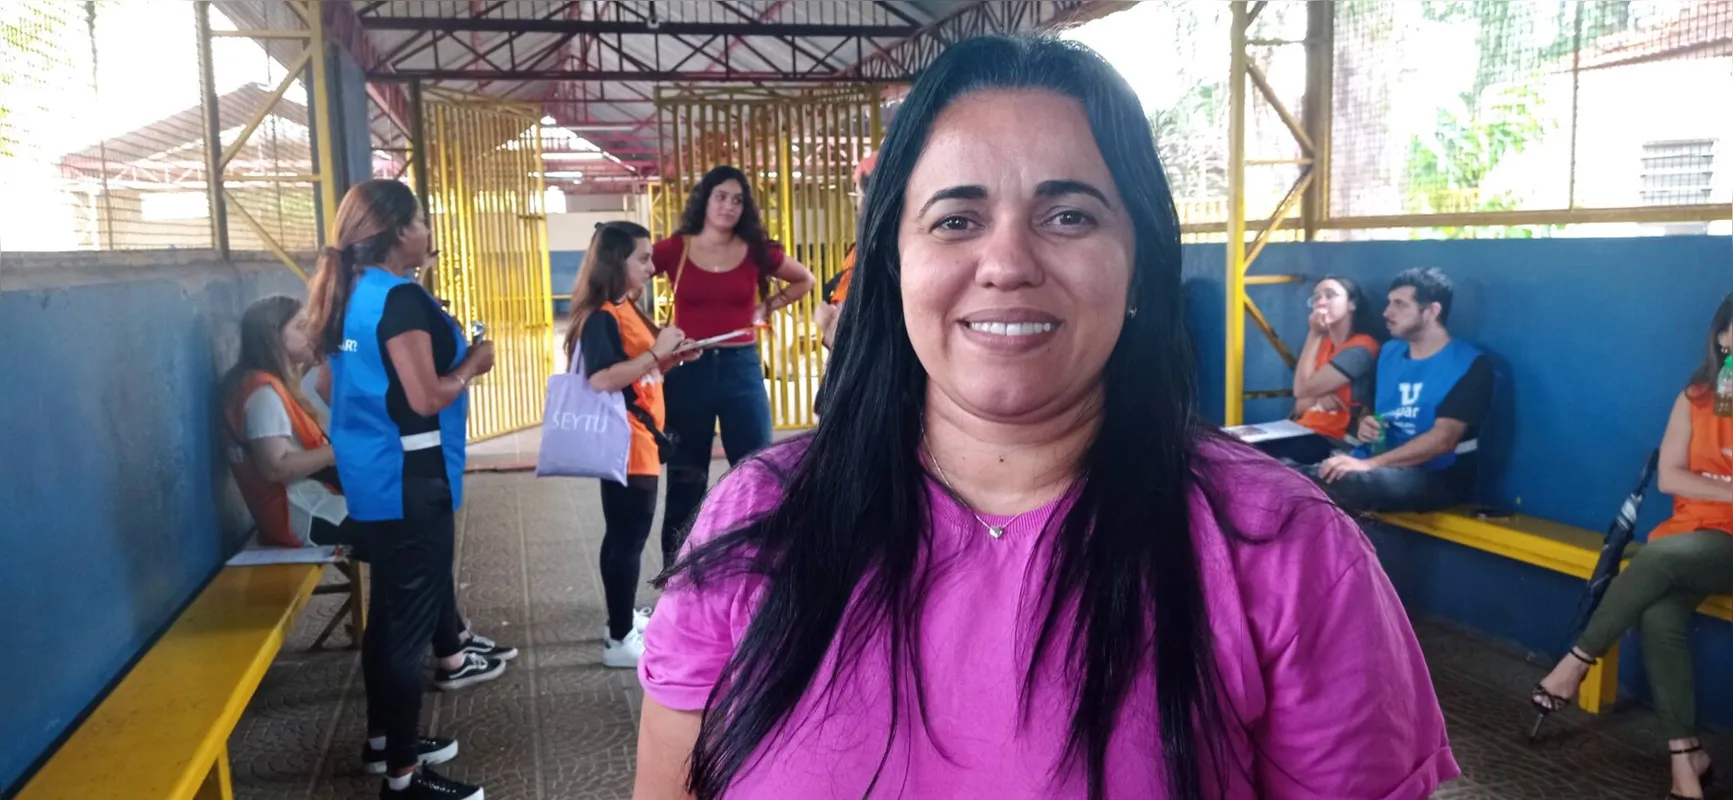 A  analista comportamental Fabiana Timóteo e a filha Catarina  moram em Ivaiporã e saíram bem cedo para chegar a tempo